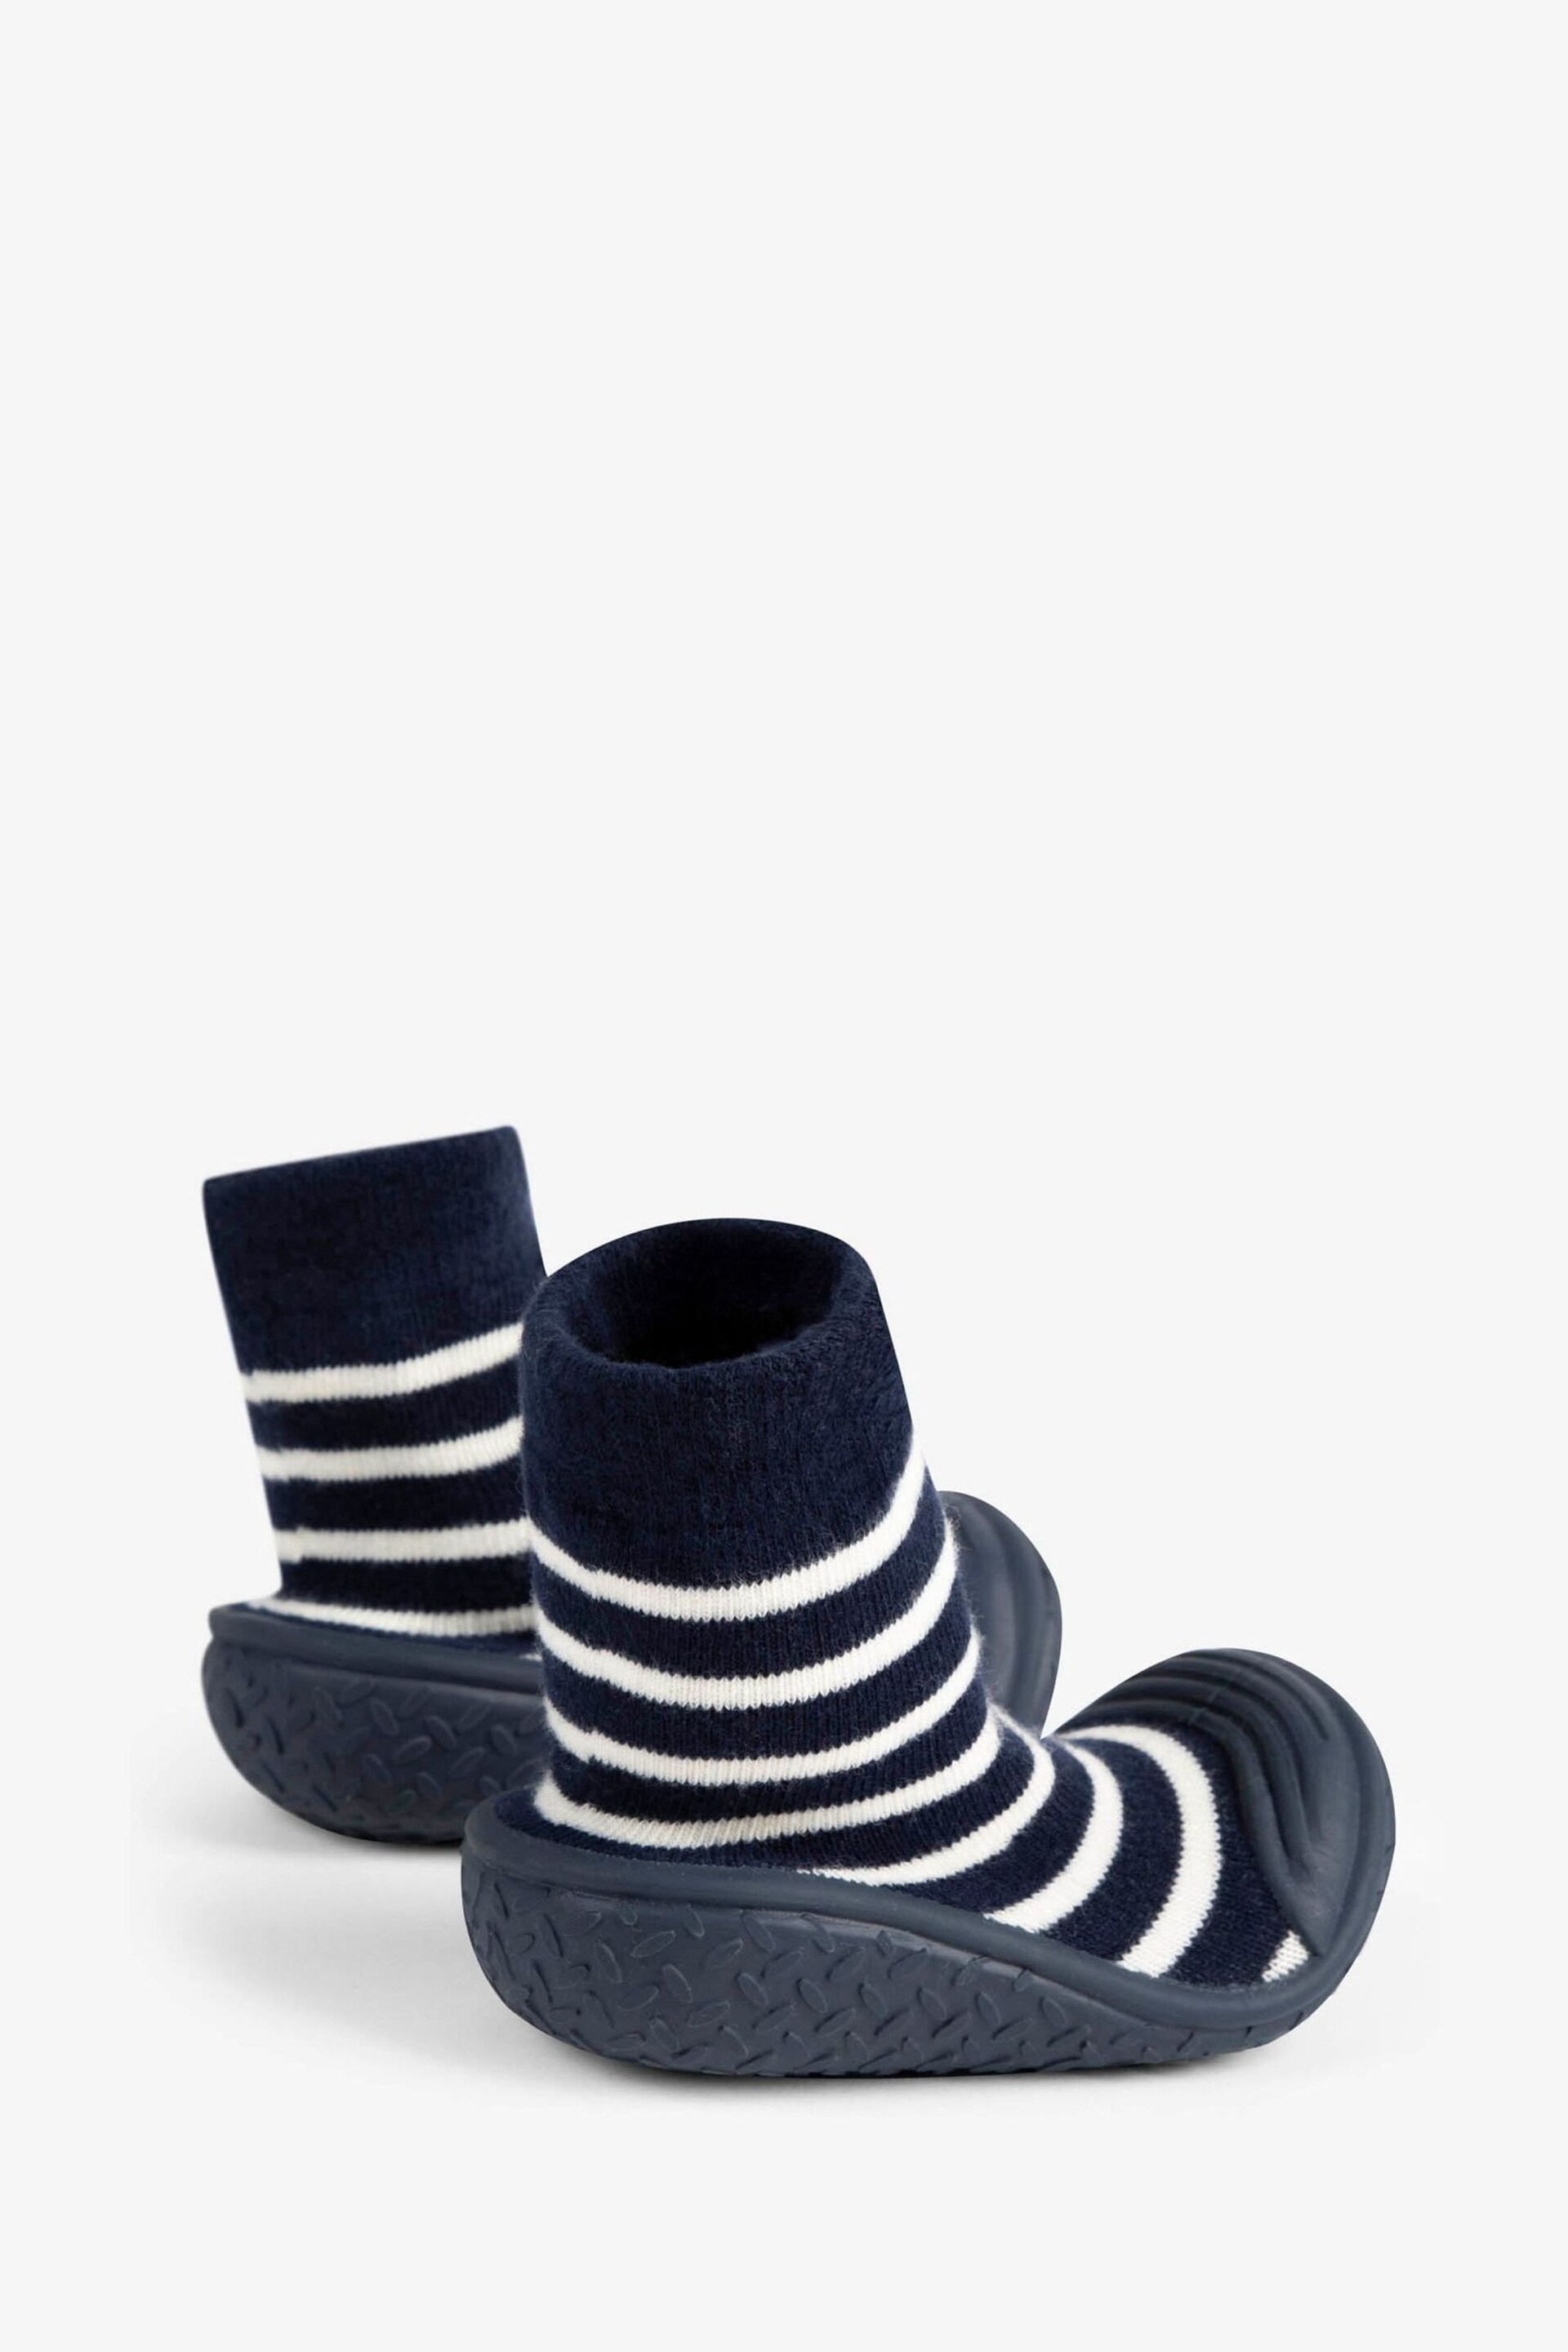 JoJo Maman Bébé Navy Ecru Stripe Stripe Indoor Outdoor Slipper Socks - Image 2 of 4